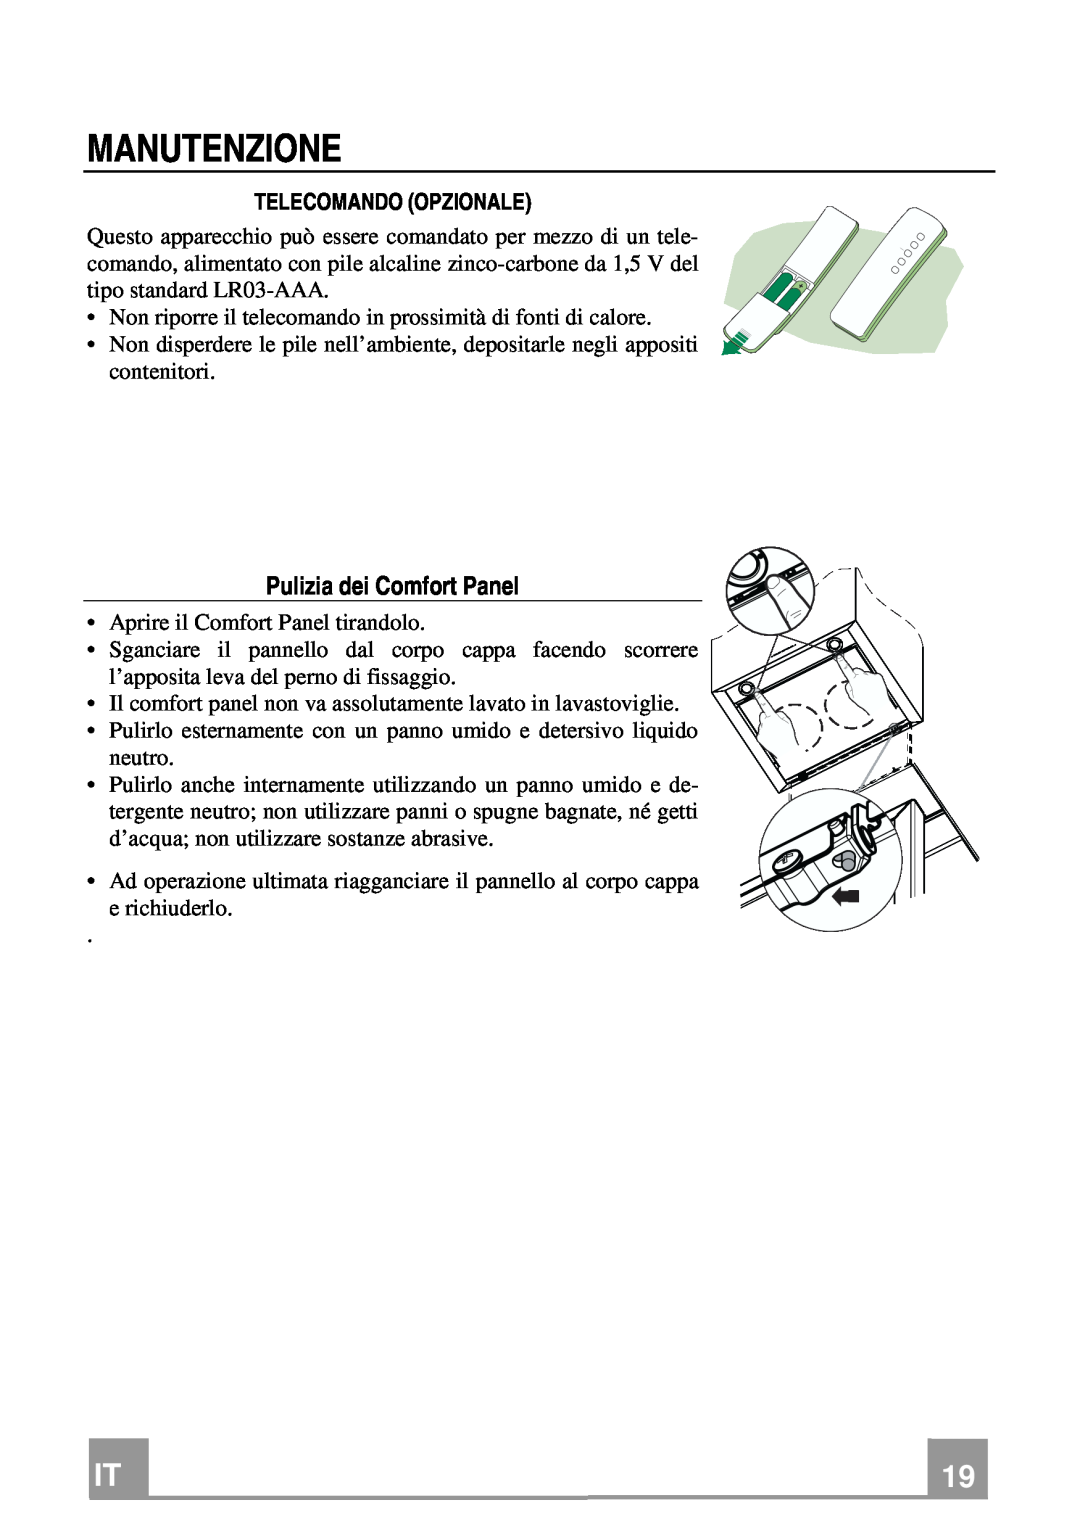 Franke Consumer Products FCR 708-H TC manual Manutenzione, Pulizia dei Comfort Panel, Telecomando Opzionale 